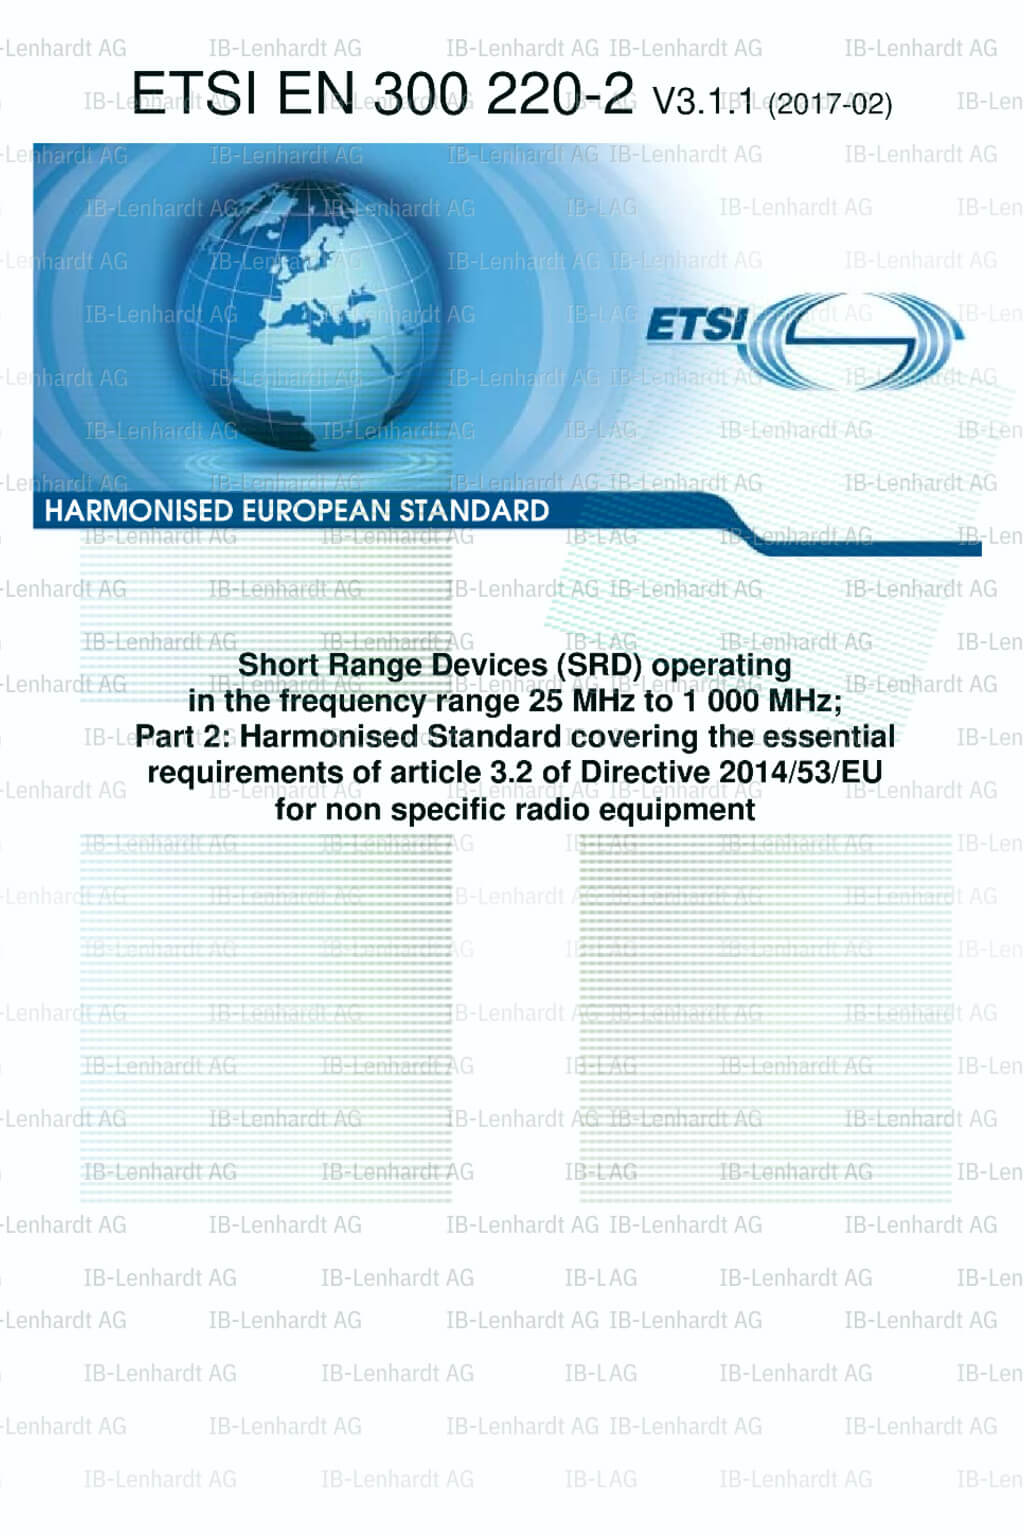 ETSI EN 300 220-2 V3.1.1